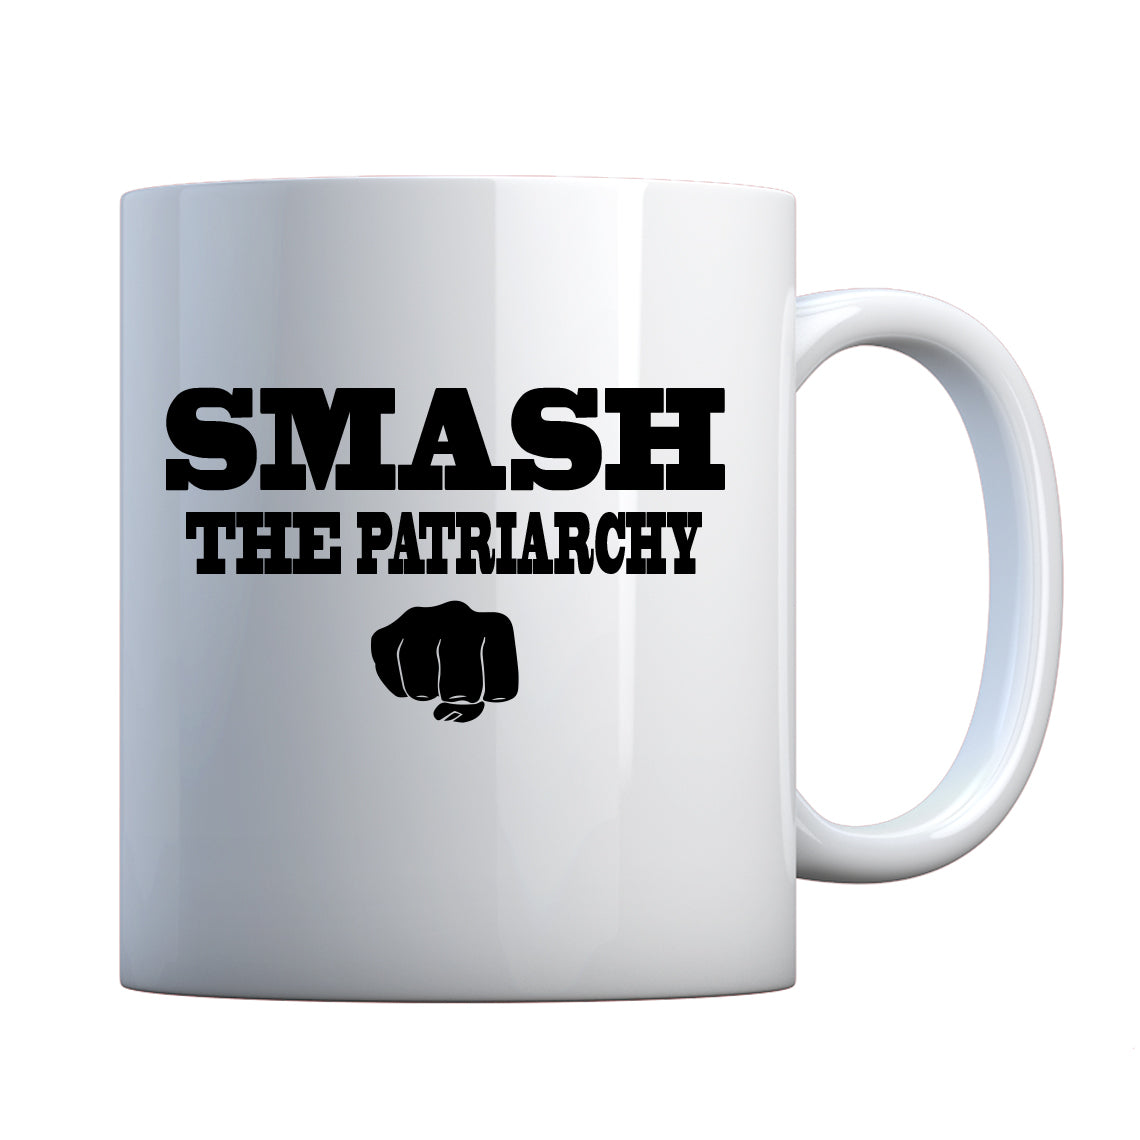 Smash the Patriarchy Ceramic Gift Mug